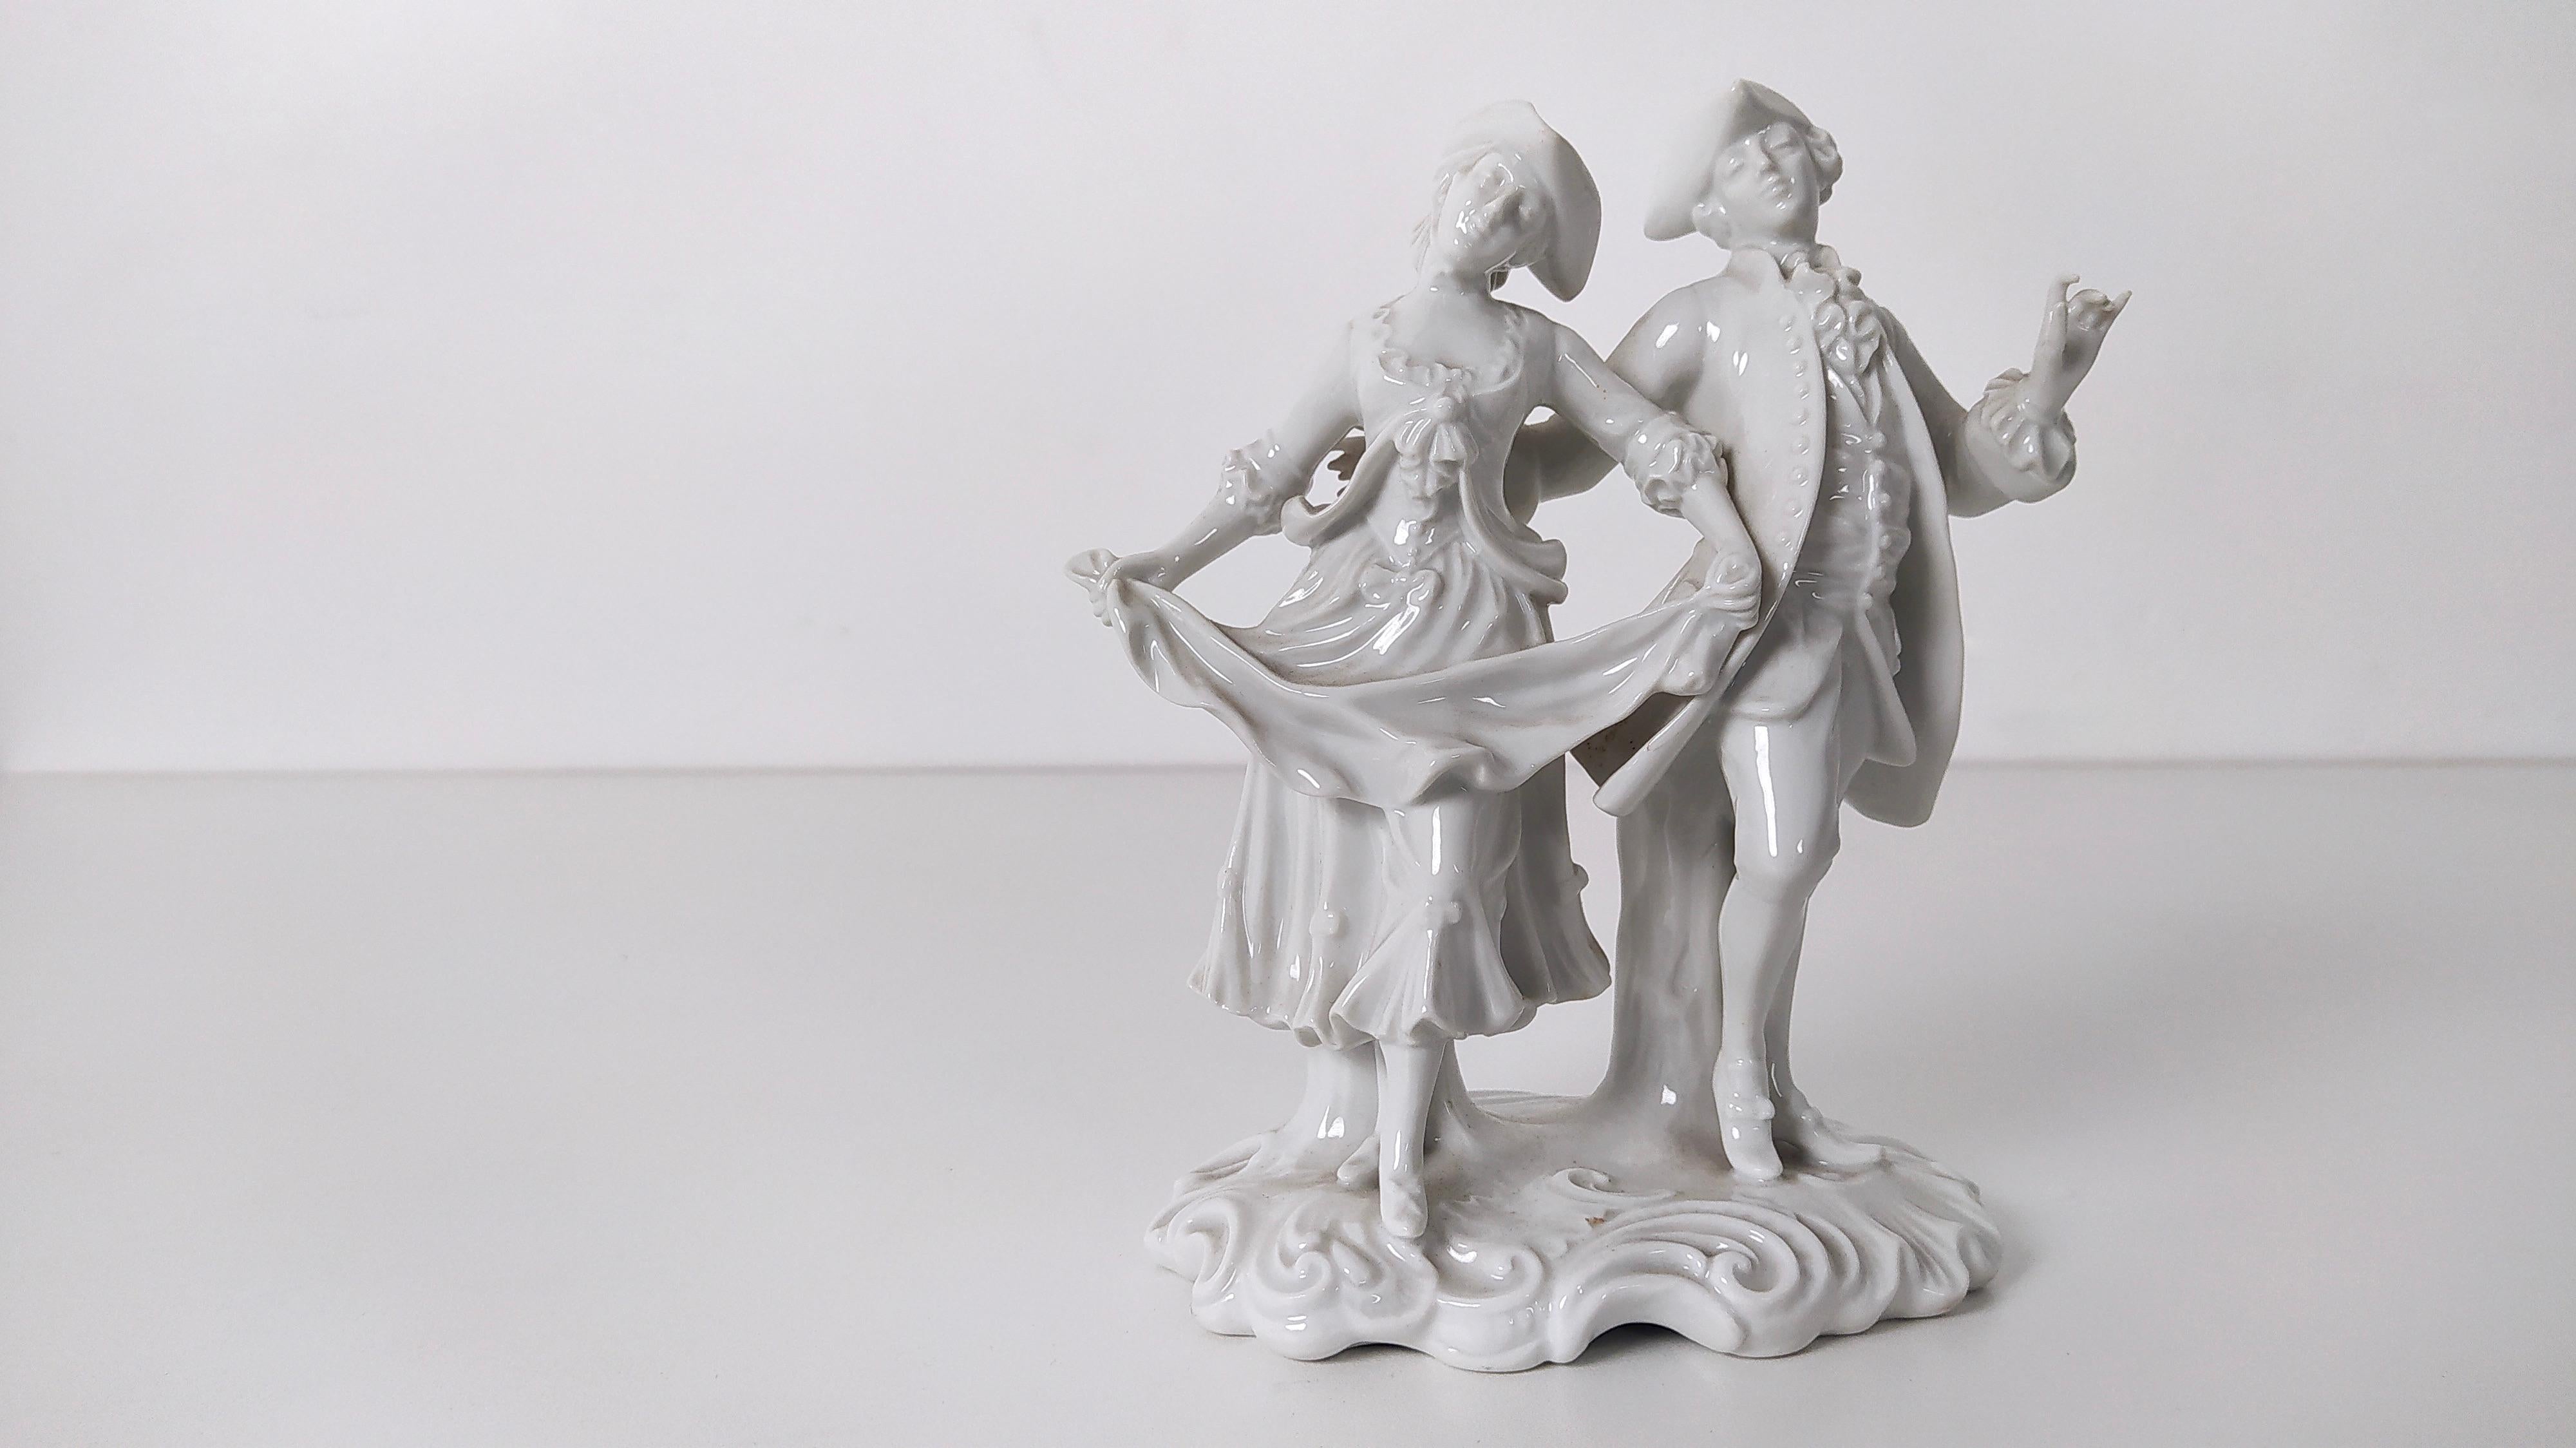 Hergestellt in Italien, 1960er Jahre.
Diese beiden Figuren aus dem 18. Jahrhundert sind aus Capodimonte-Porzellan gefertigt.
Diese Statue könnte leichte Gebrauchsspuren aufweisen, da sie Vintage ist, aber sie kann als in einem ausgezeichneten